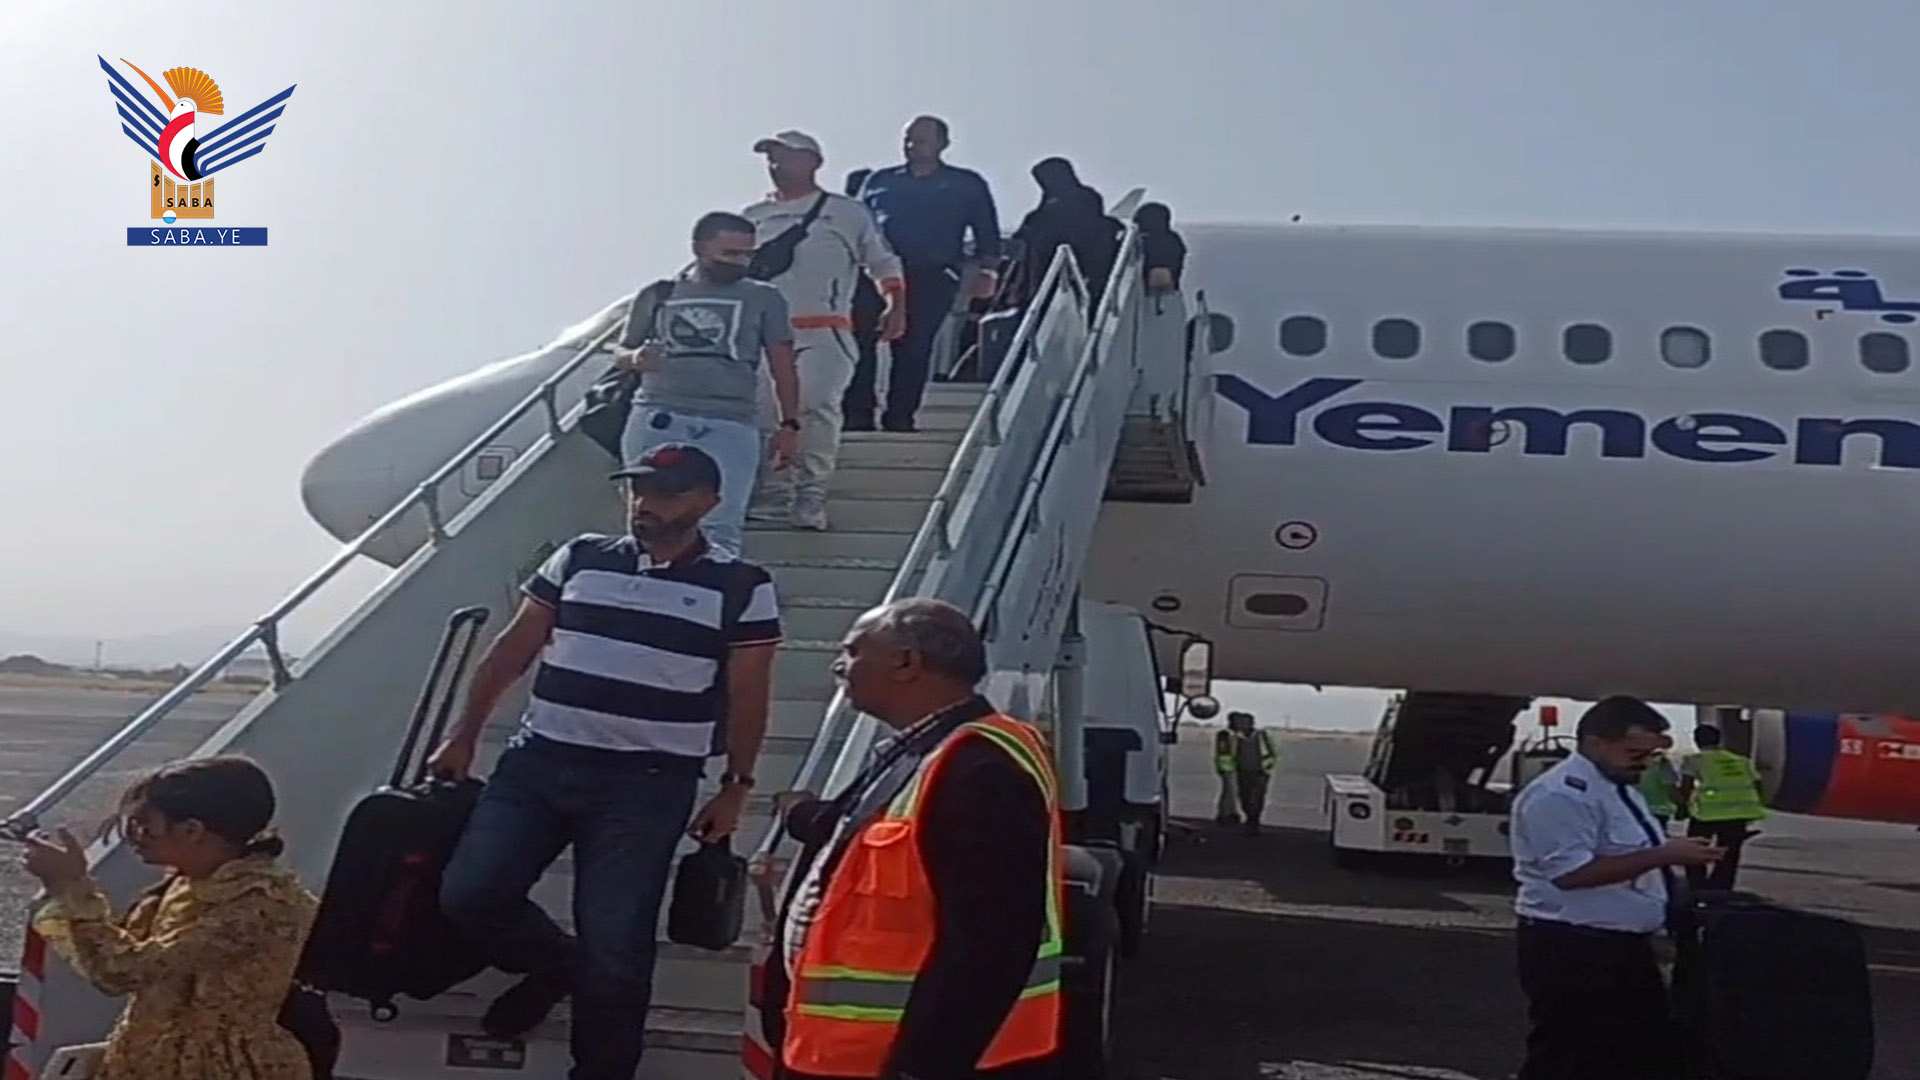   559 passagers sont arrivés et repartis par l'aéroport international de Sanaa